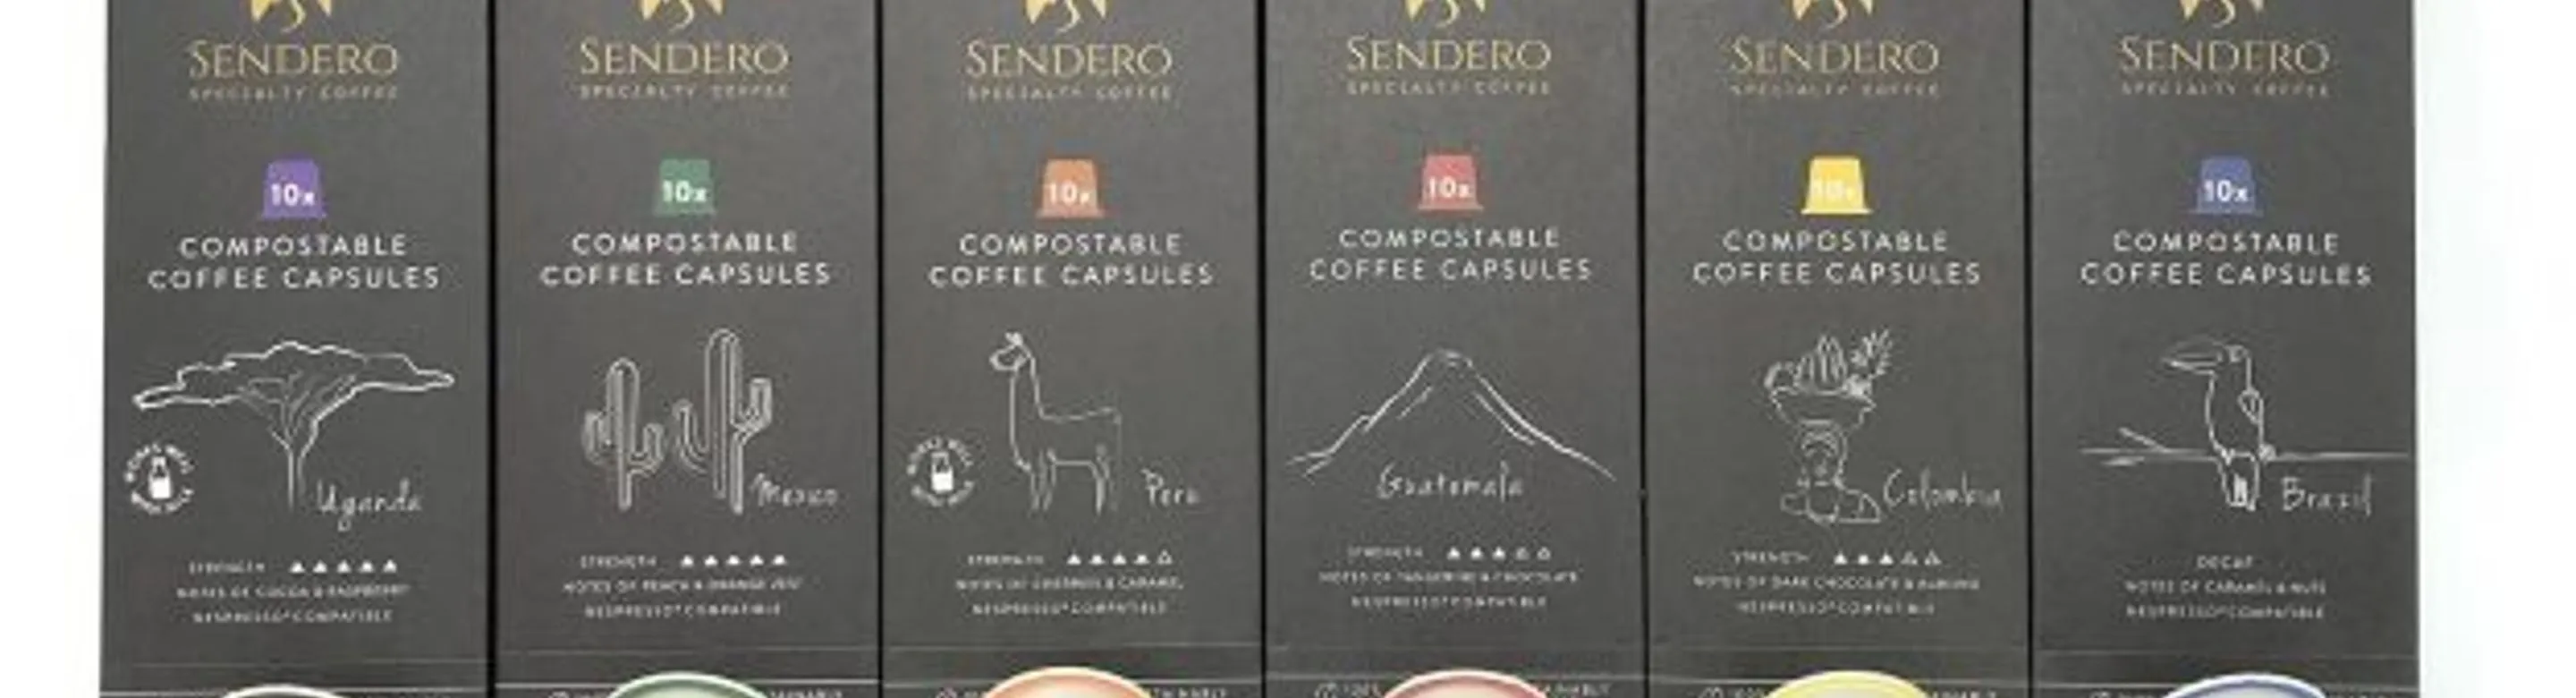 Sendero Coffee